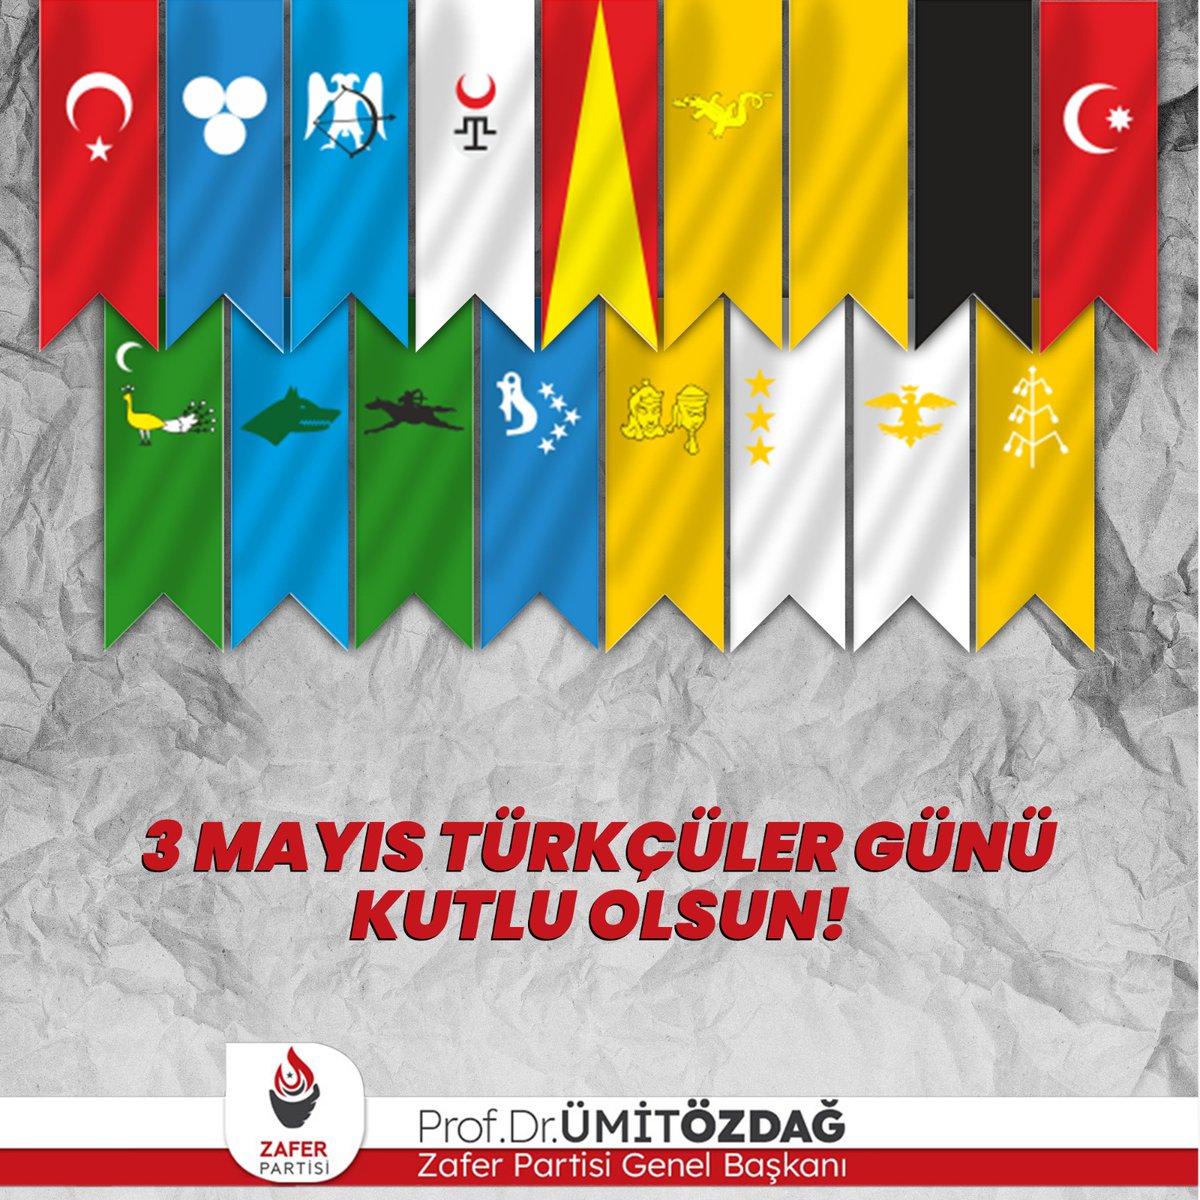 Dünyanın her yerinde Türklük ve Türkçülük mücadelesinin görünen ve gizli kahramanlarına selam olsun. 3 Mayıs Türkçüler Günü kutlu olsun. Ne mutlu Türküm diyene!